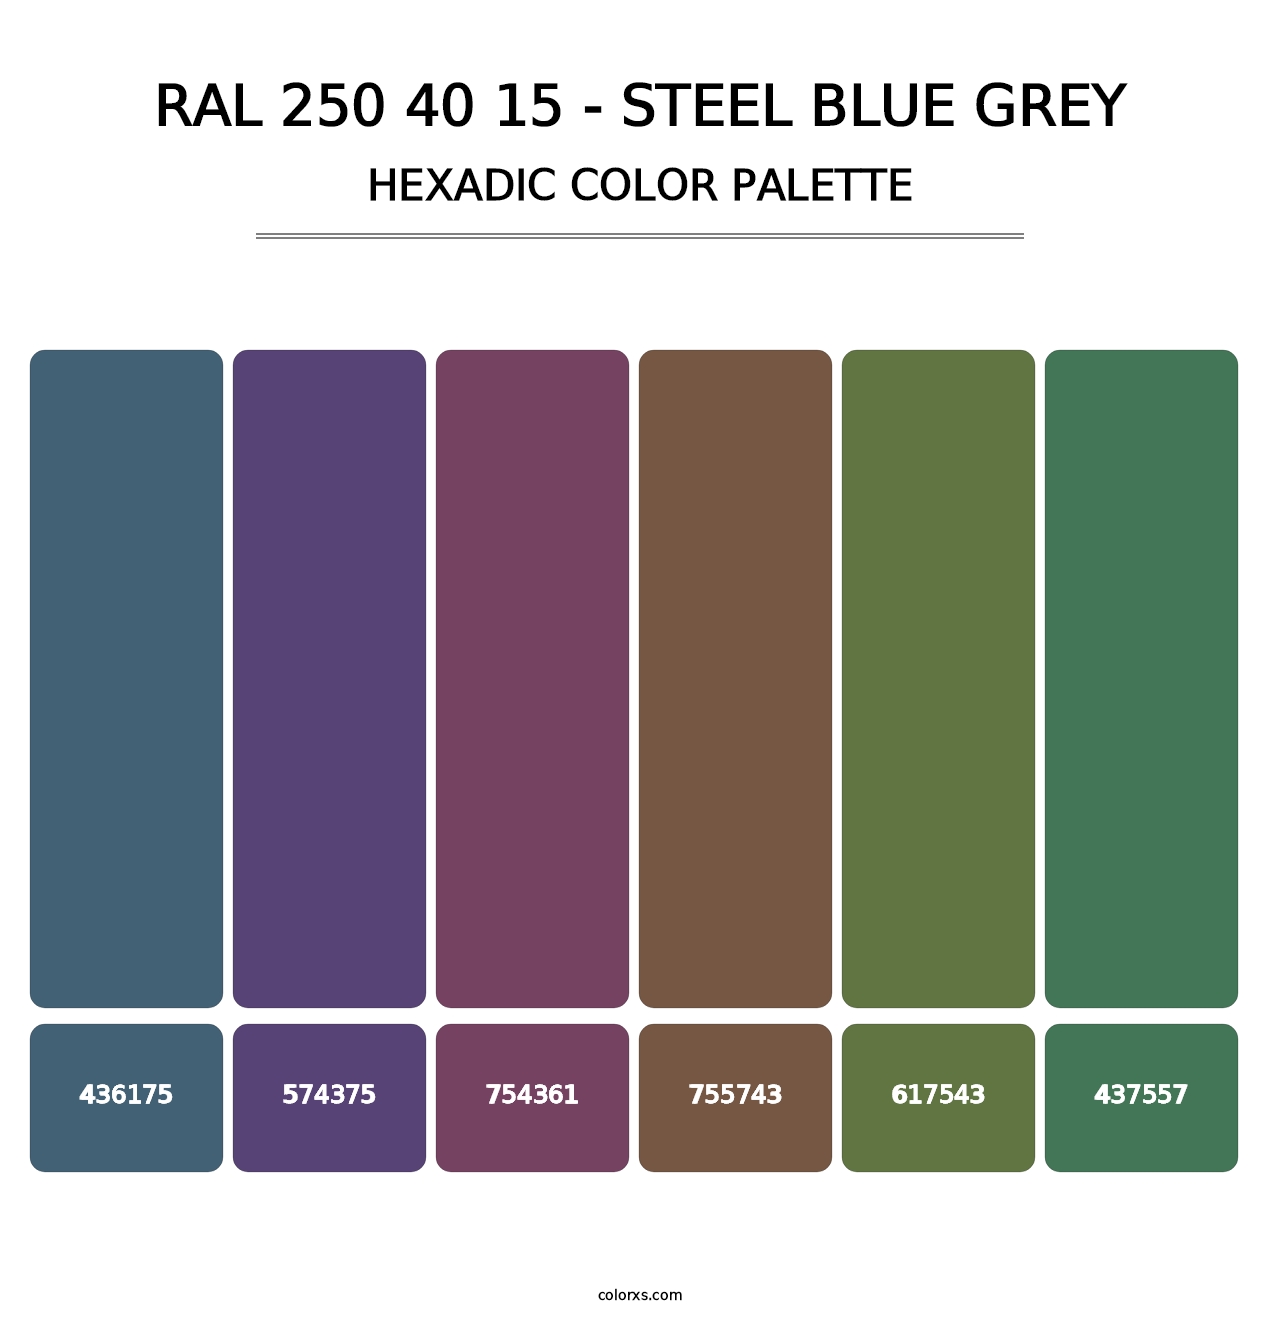 RAL 250 40 15 - Steel Blue Grey - Hexadic Color Palette